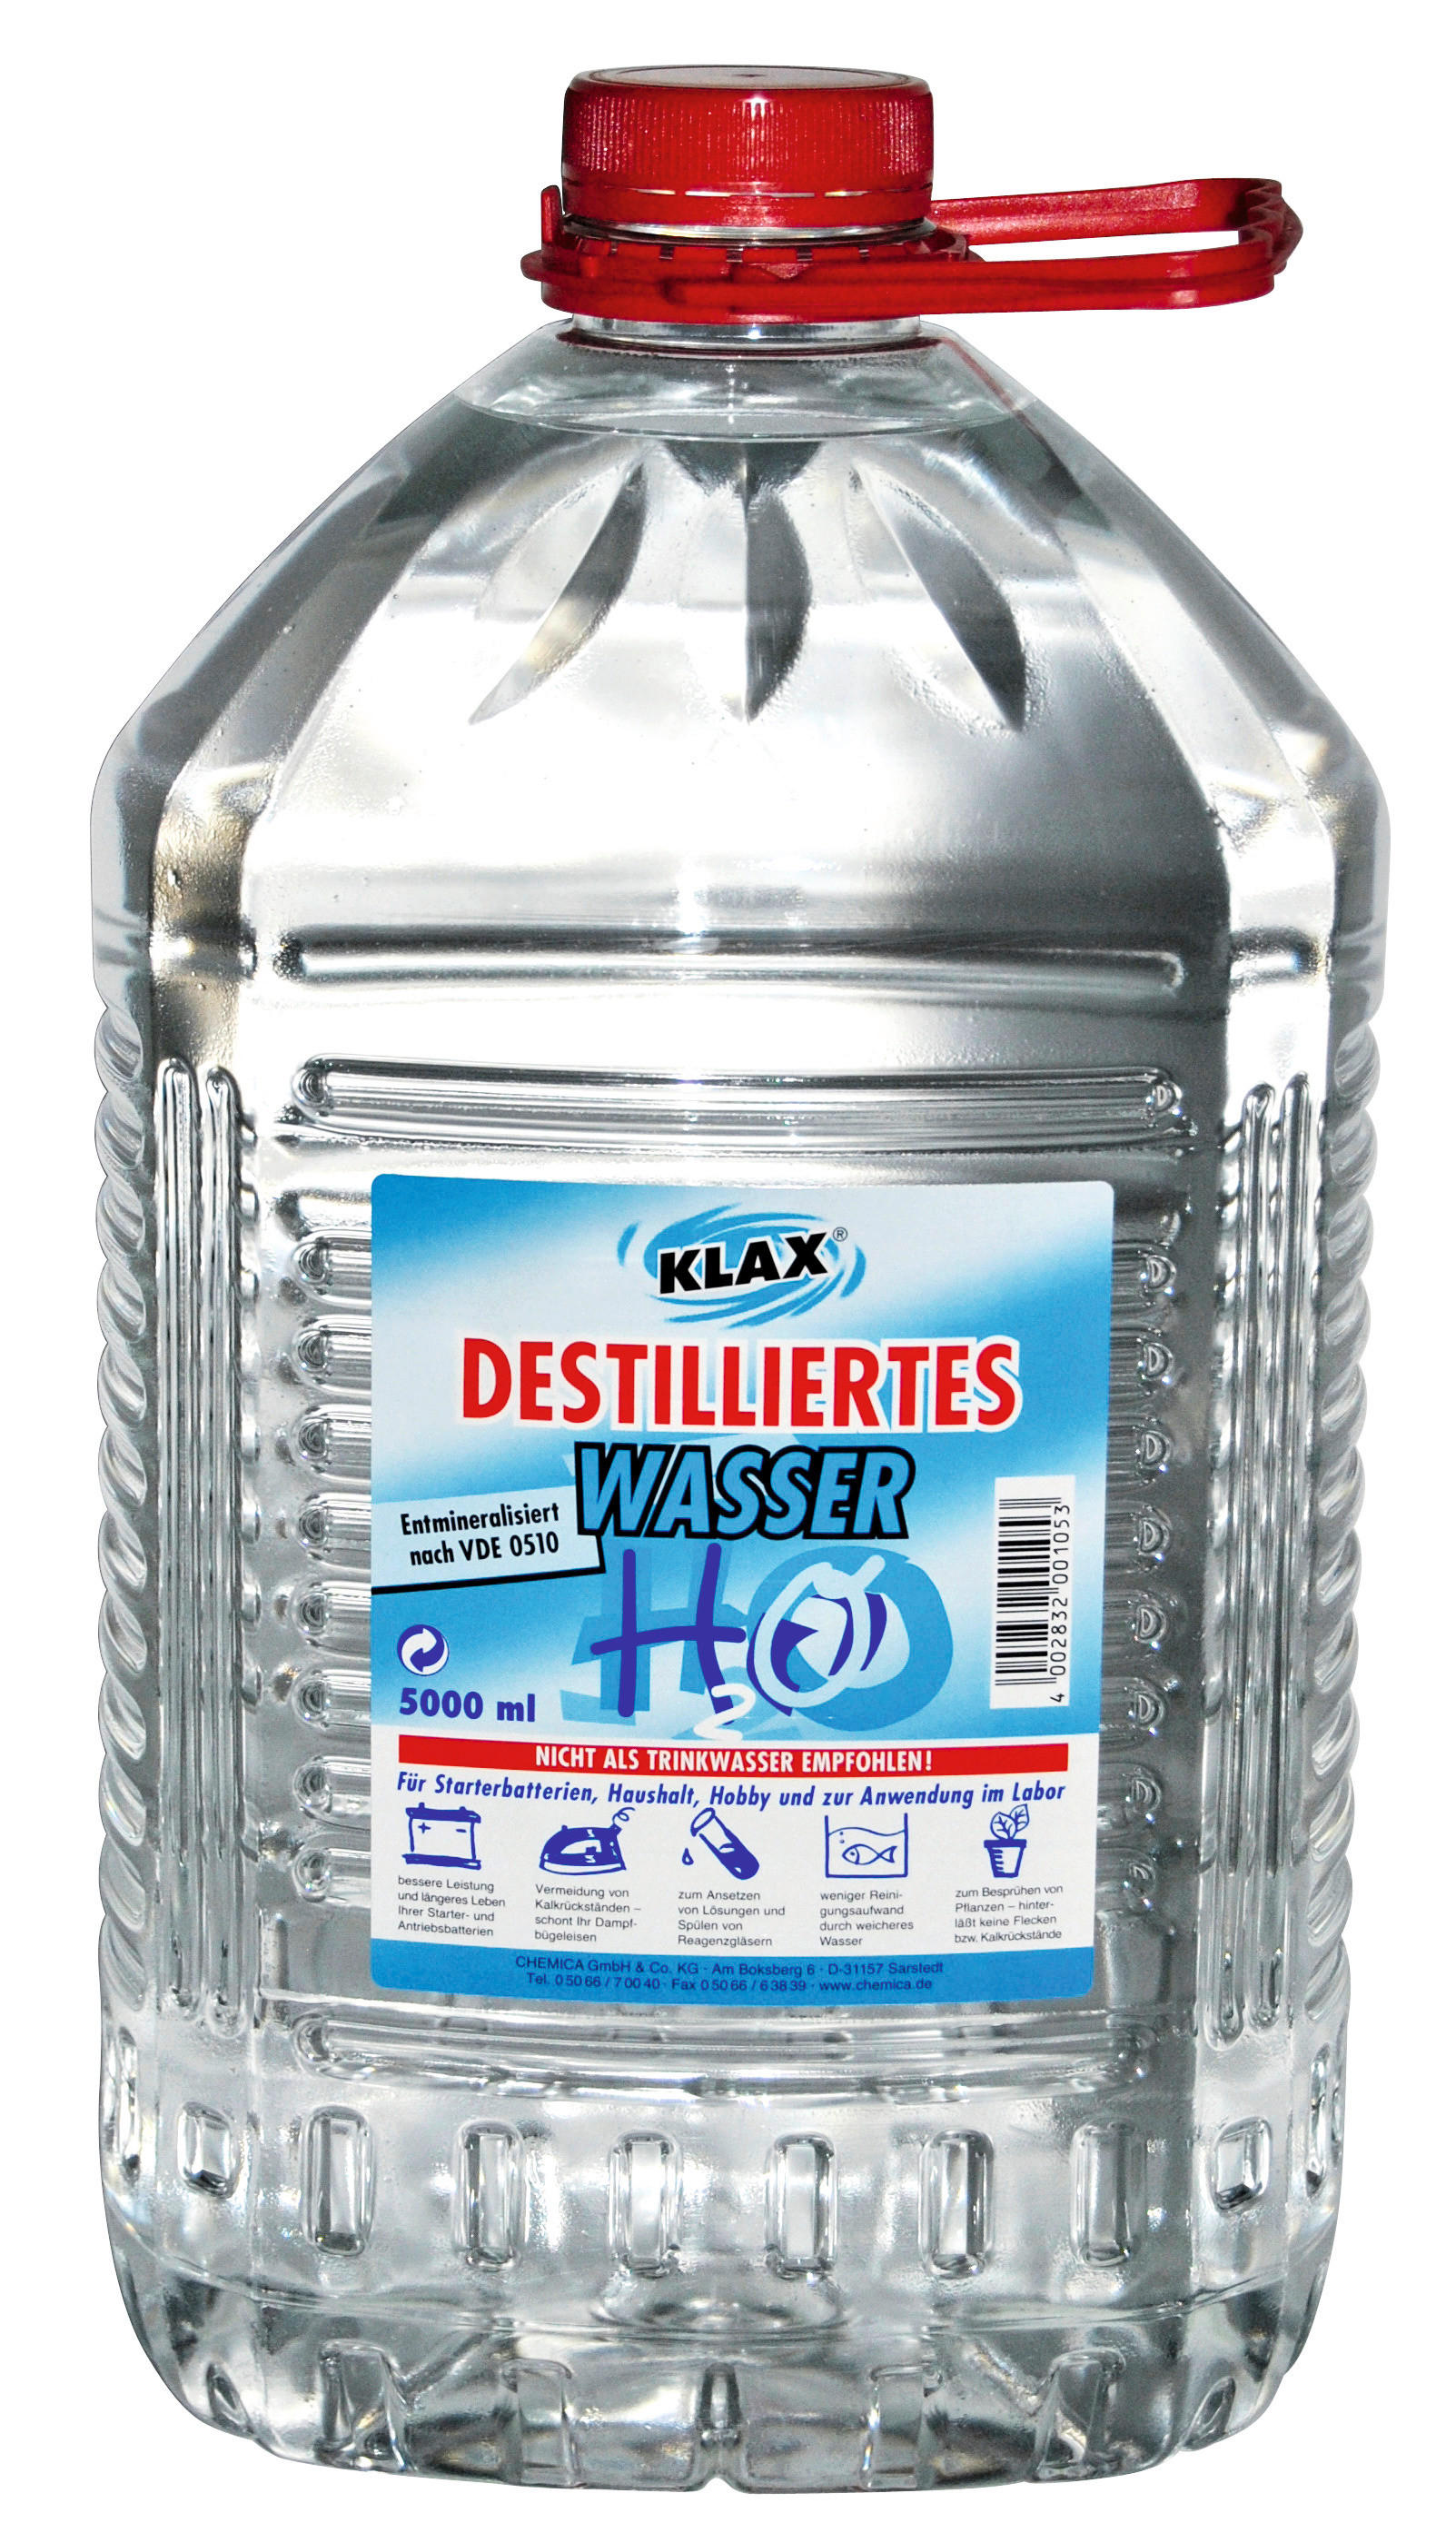 Destilliertes Wasser online kaufen